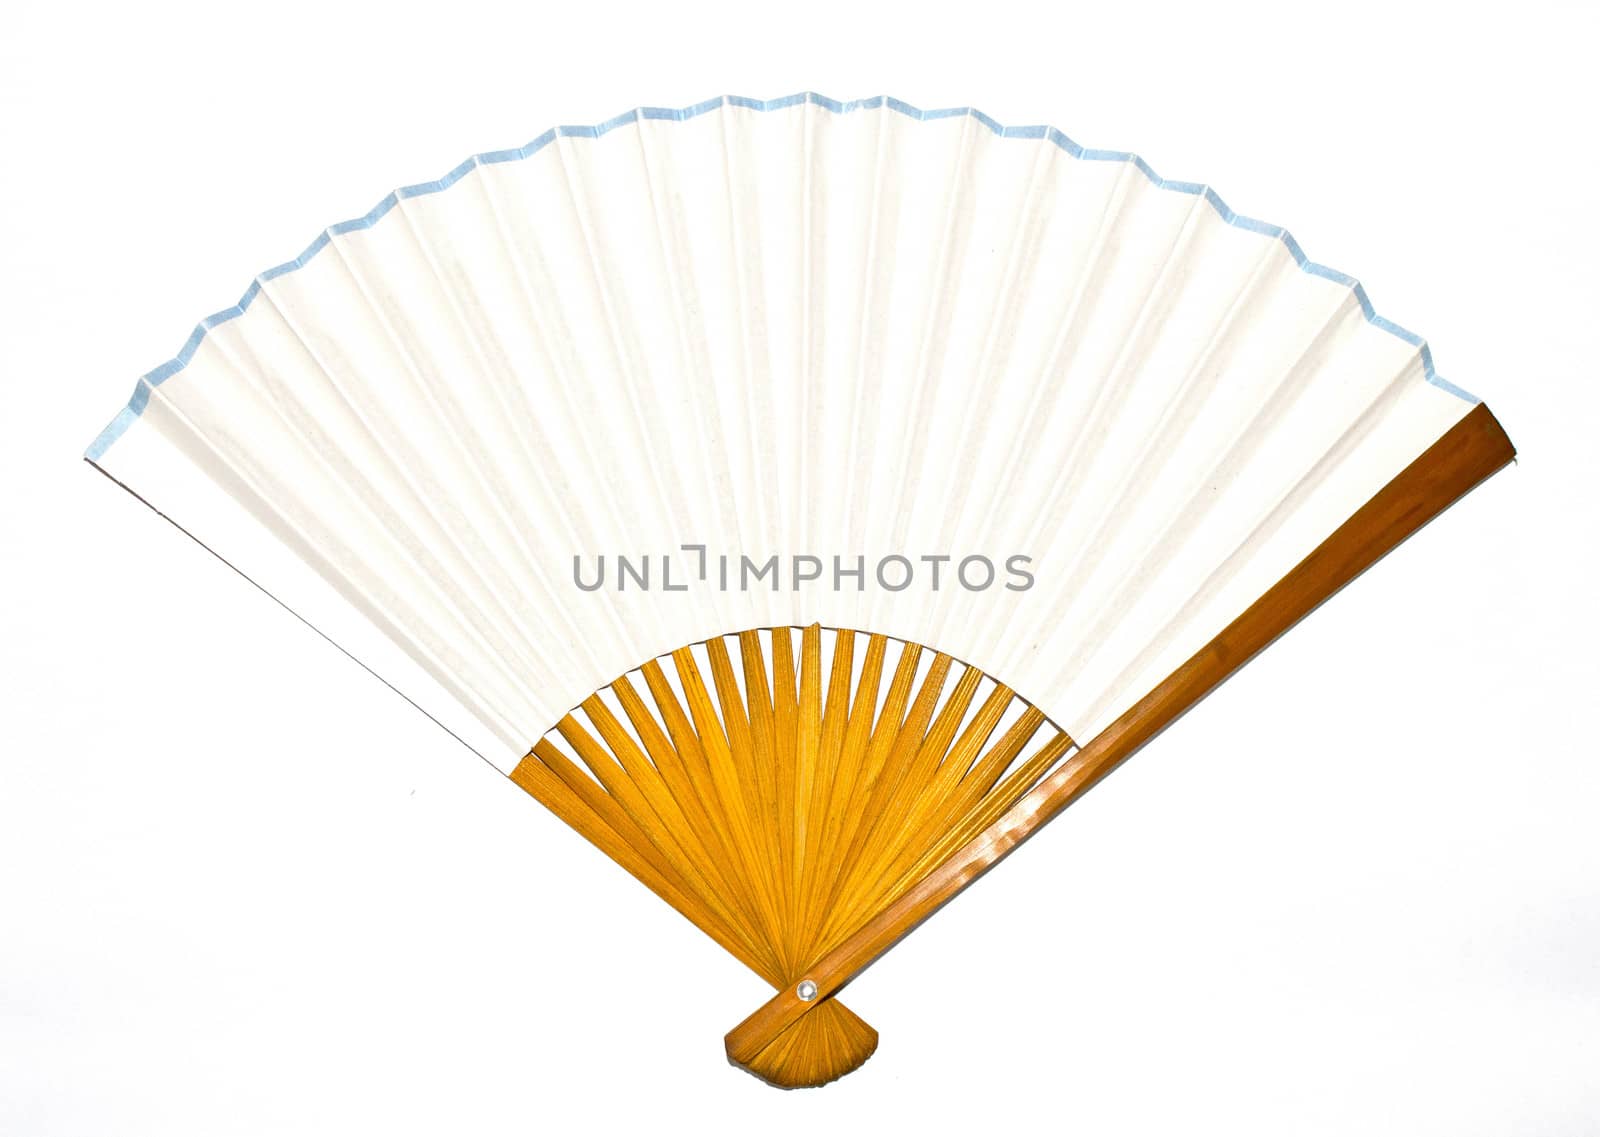 A Vintage Antique Hand Fan Ladies Accessory